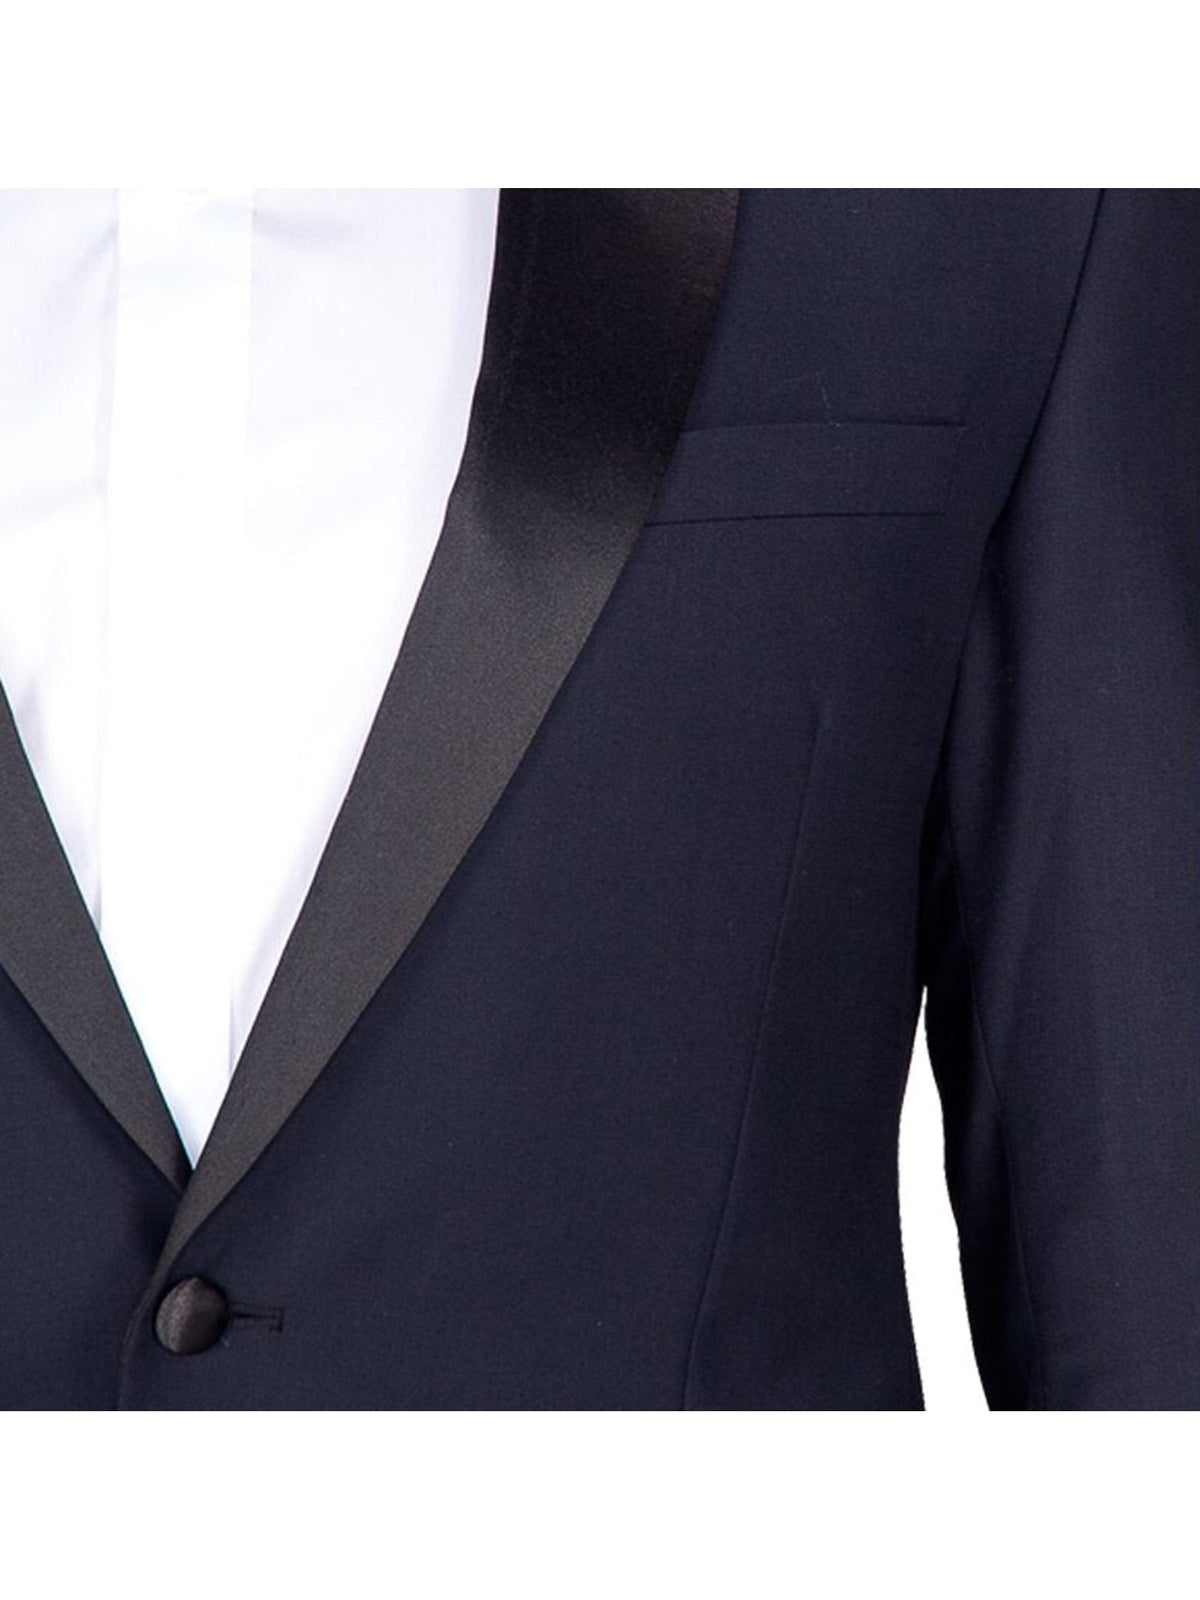 navy blue tuxedo lapel and button